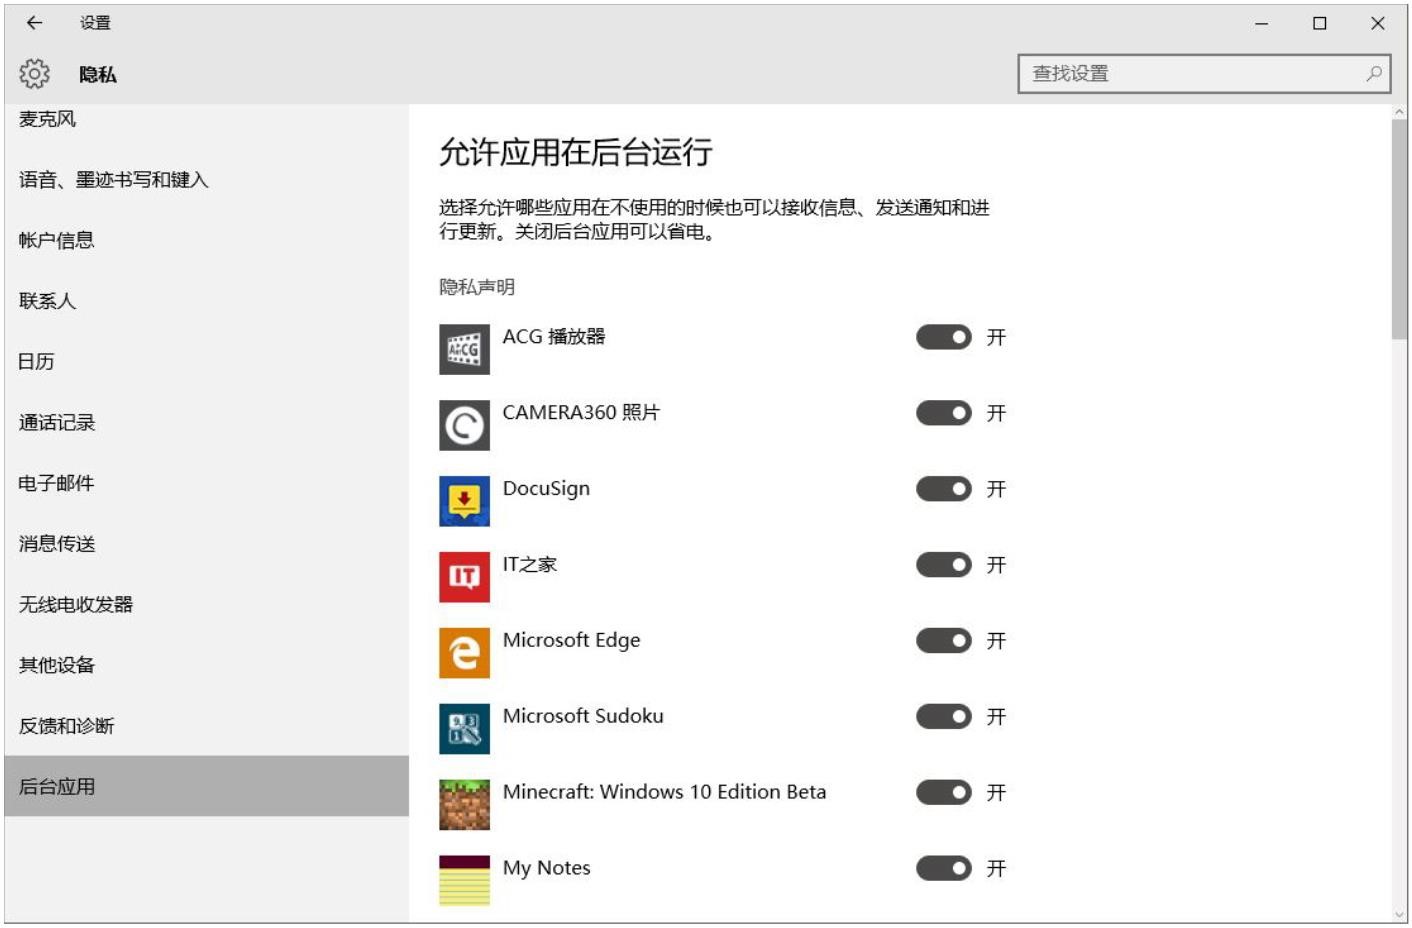 Windows10用户手册 - Windows 10 功能使用 - Modern 设置